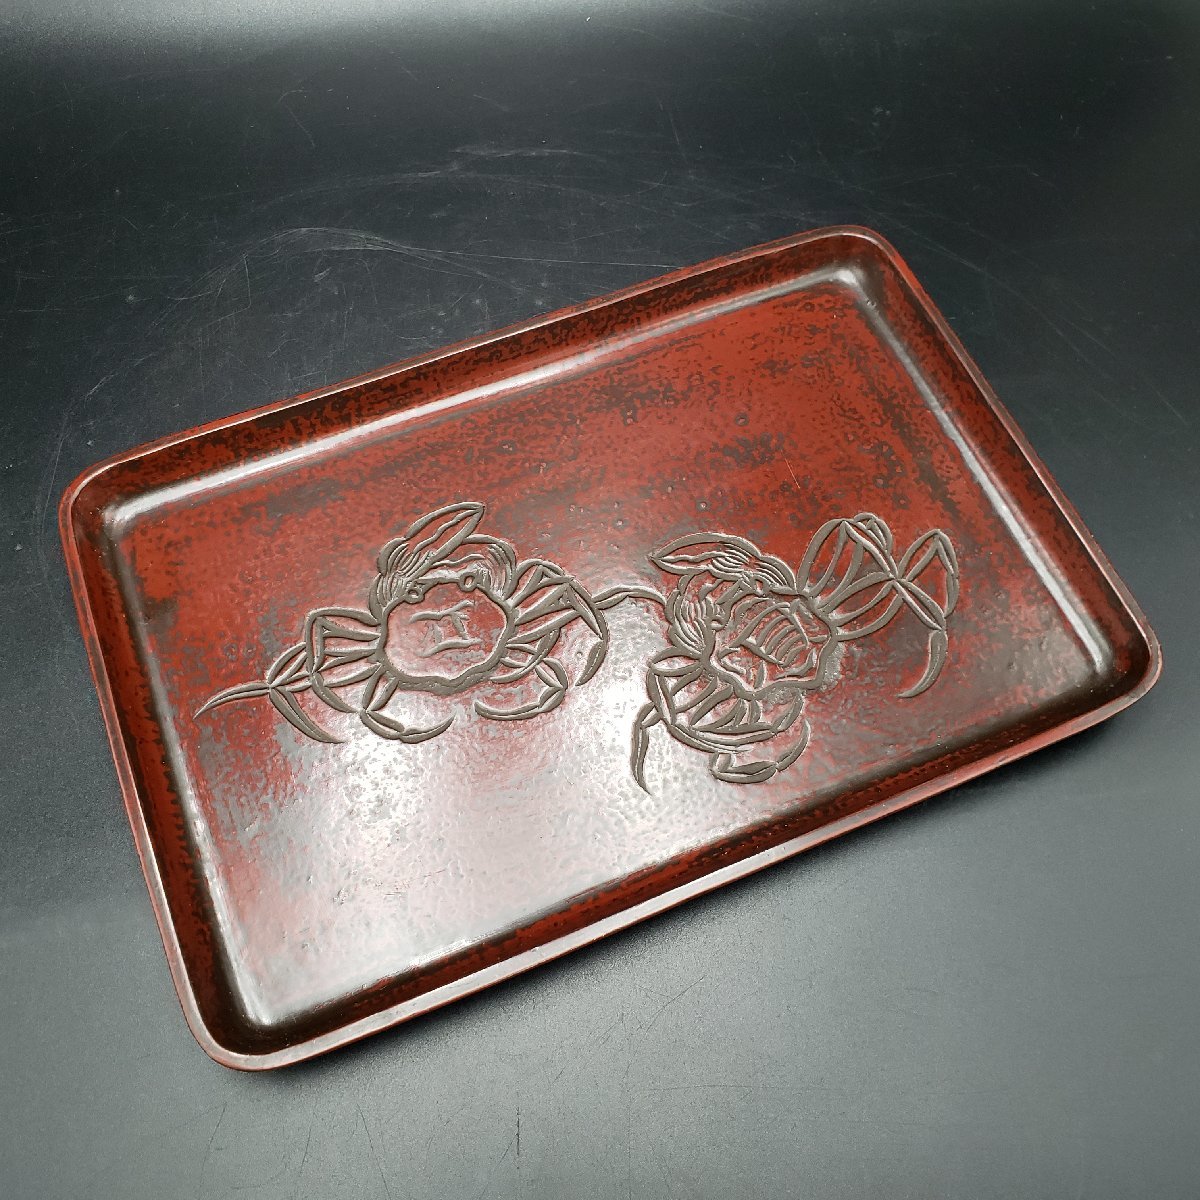  O-Bon из дерева угол поддон японский стиль . краб лакированные изделия лакированные изделия чайная посуда чай поддон угол tray подлинная вещь retro коллекция ширина примерно 33.5cm[80e822]